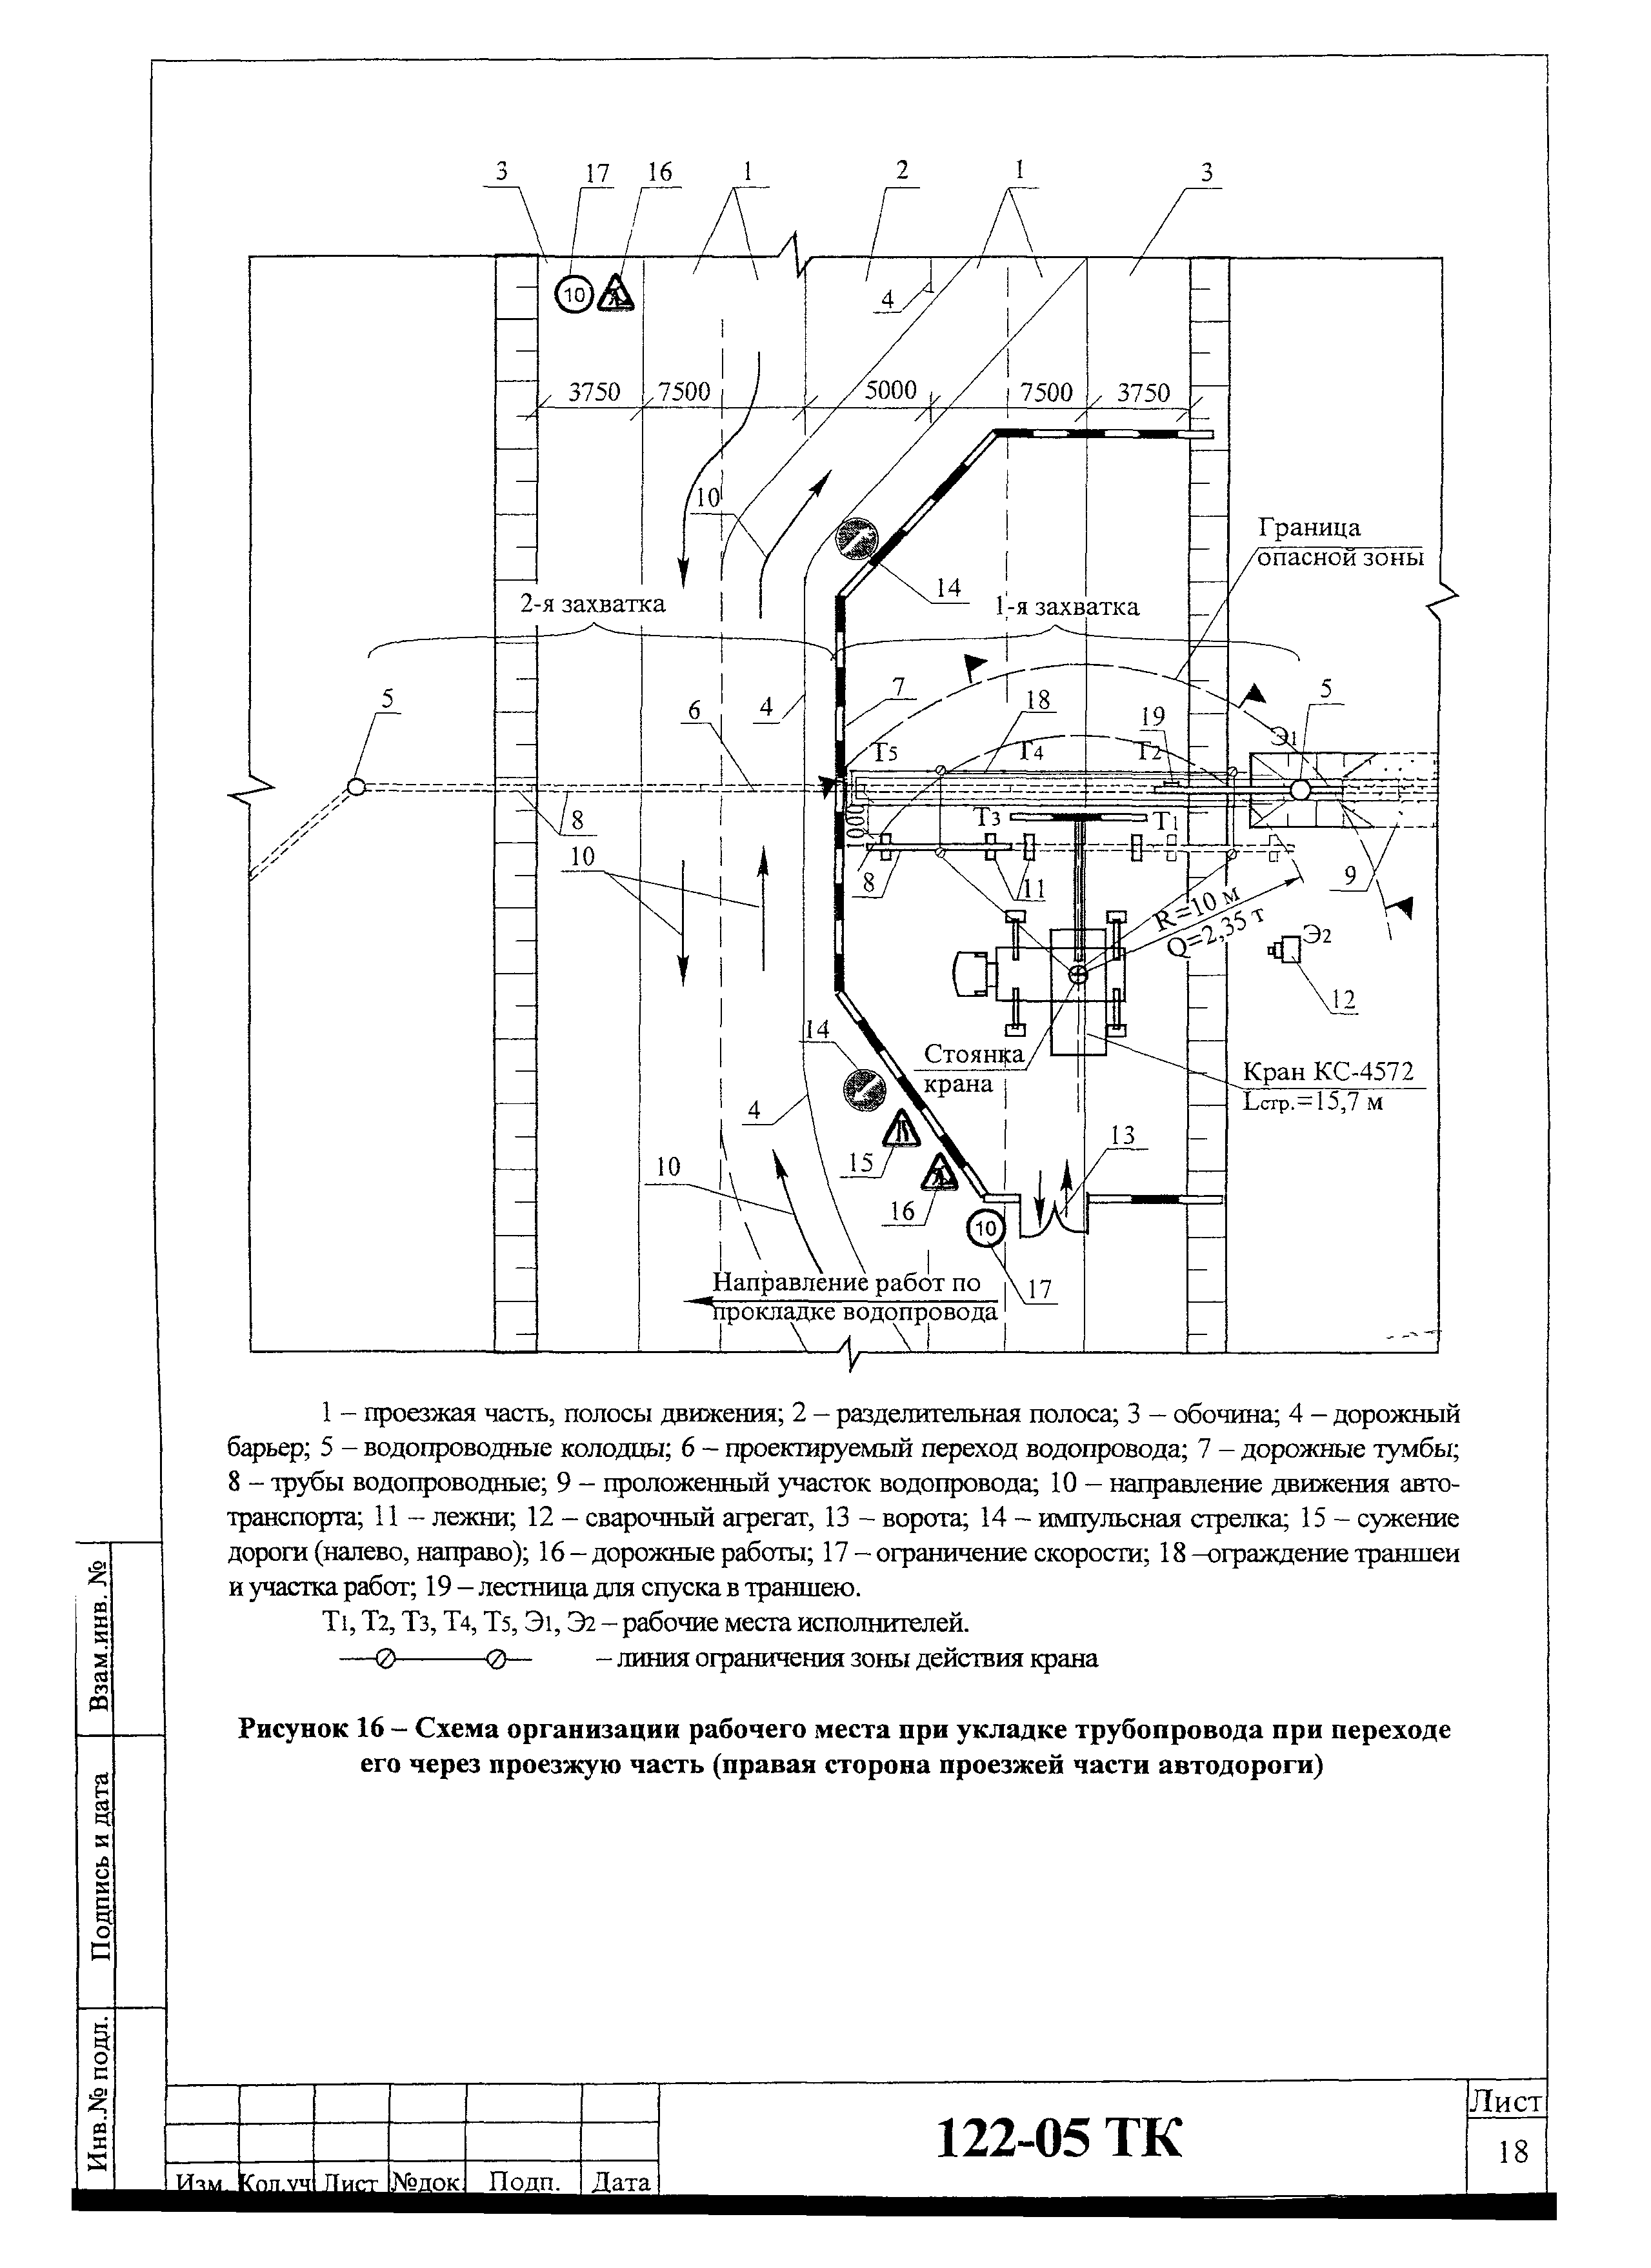 Технологическая карта 122-05 ТК